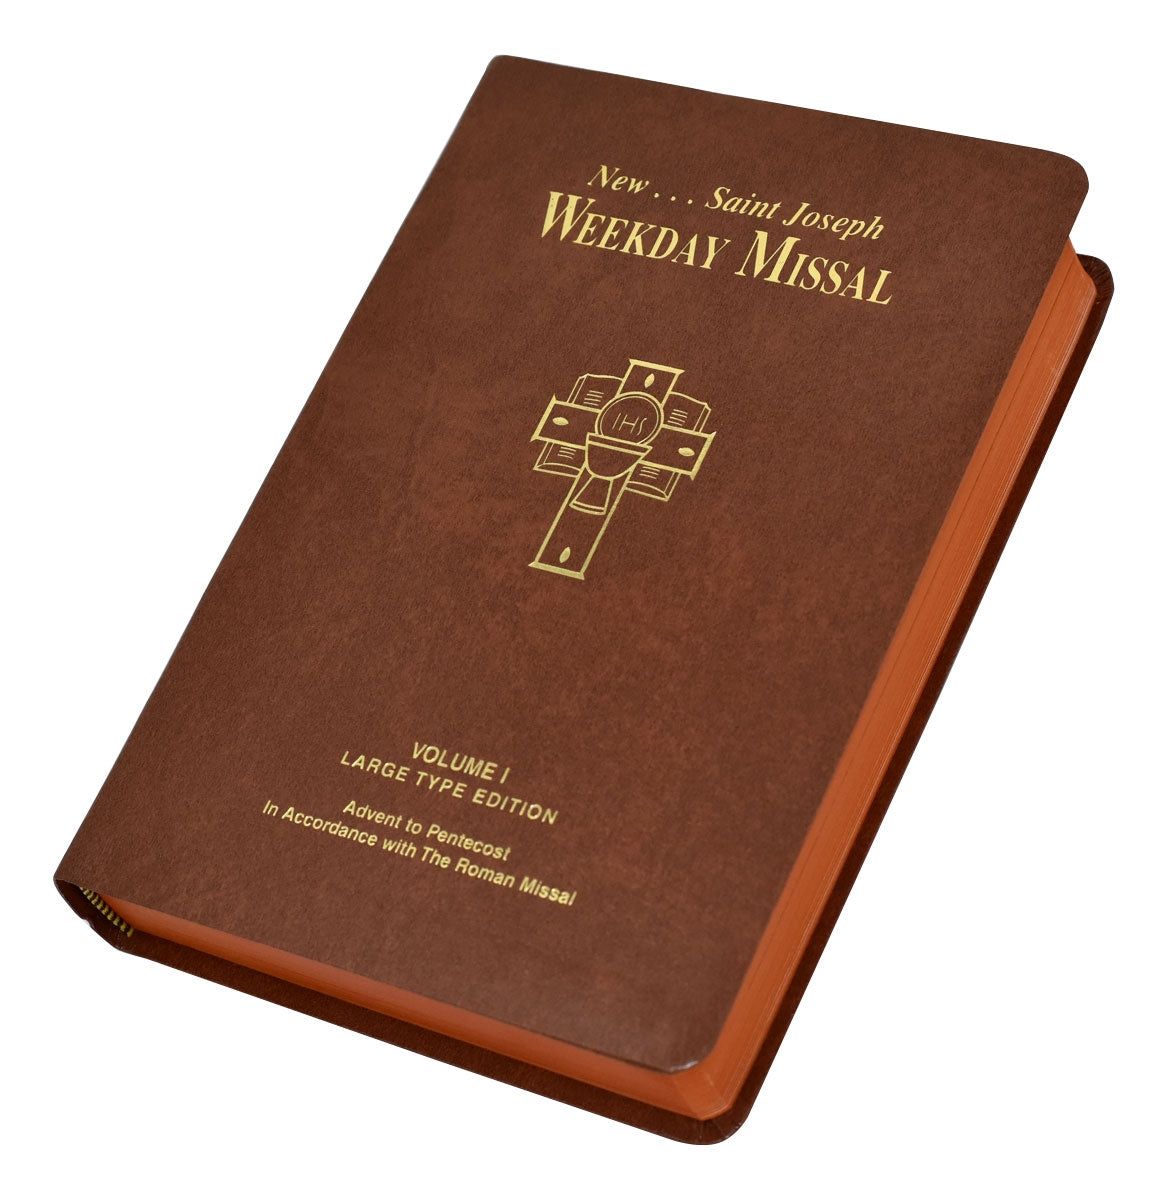 St Joseph Weekday Missal Large Type Volume I